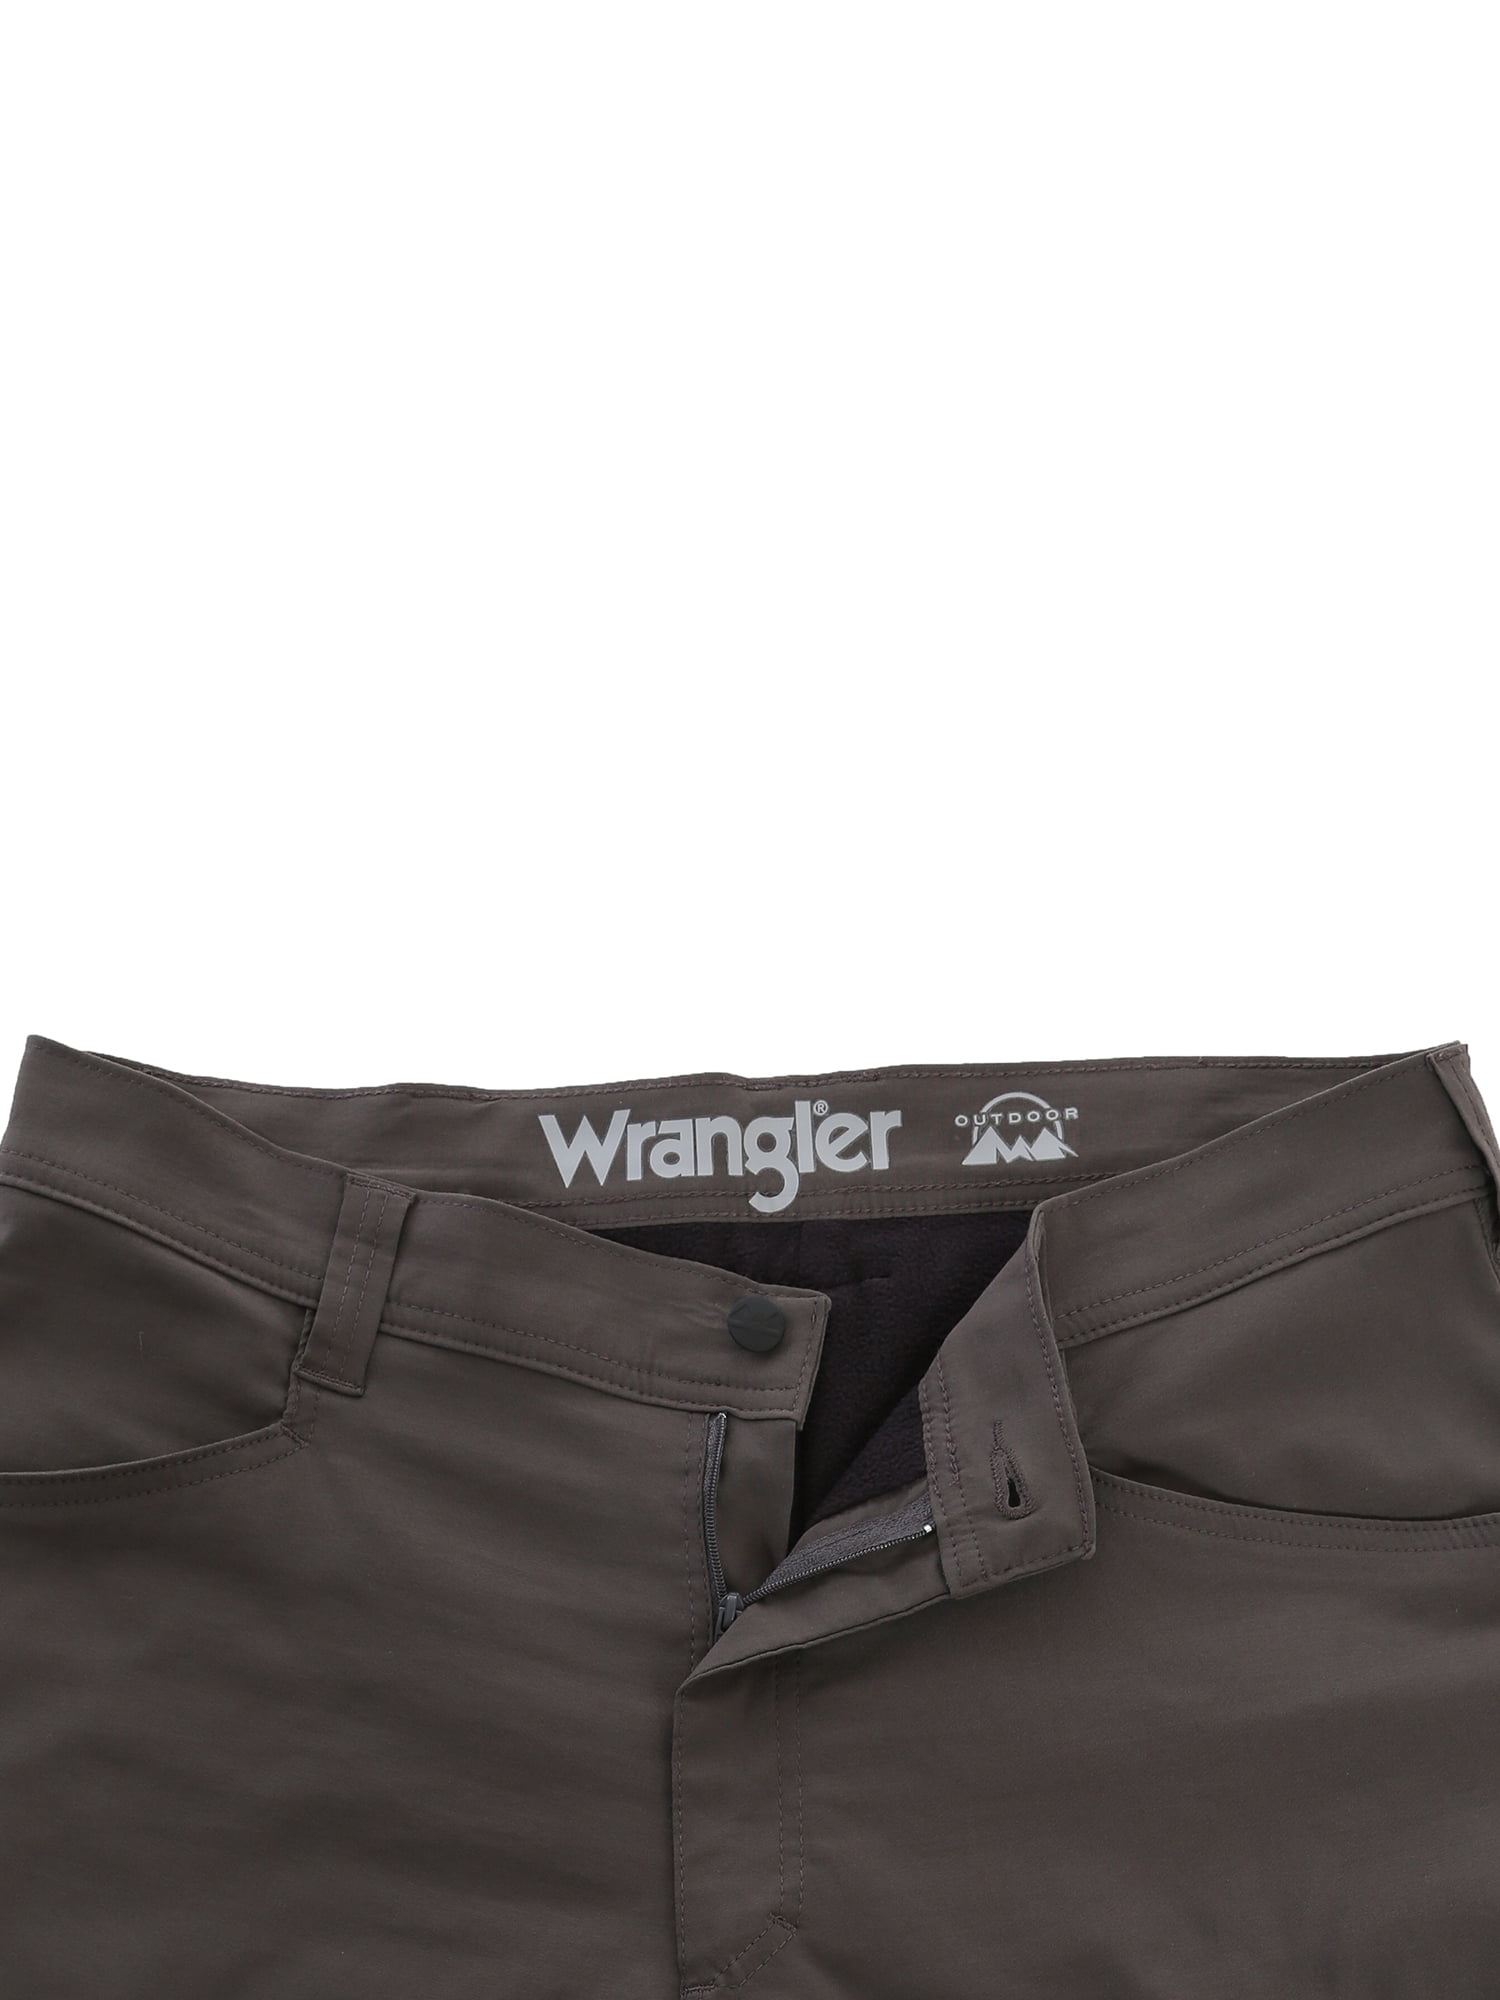 wrangler outdoor fleece lined pants